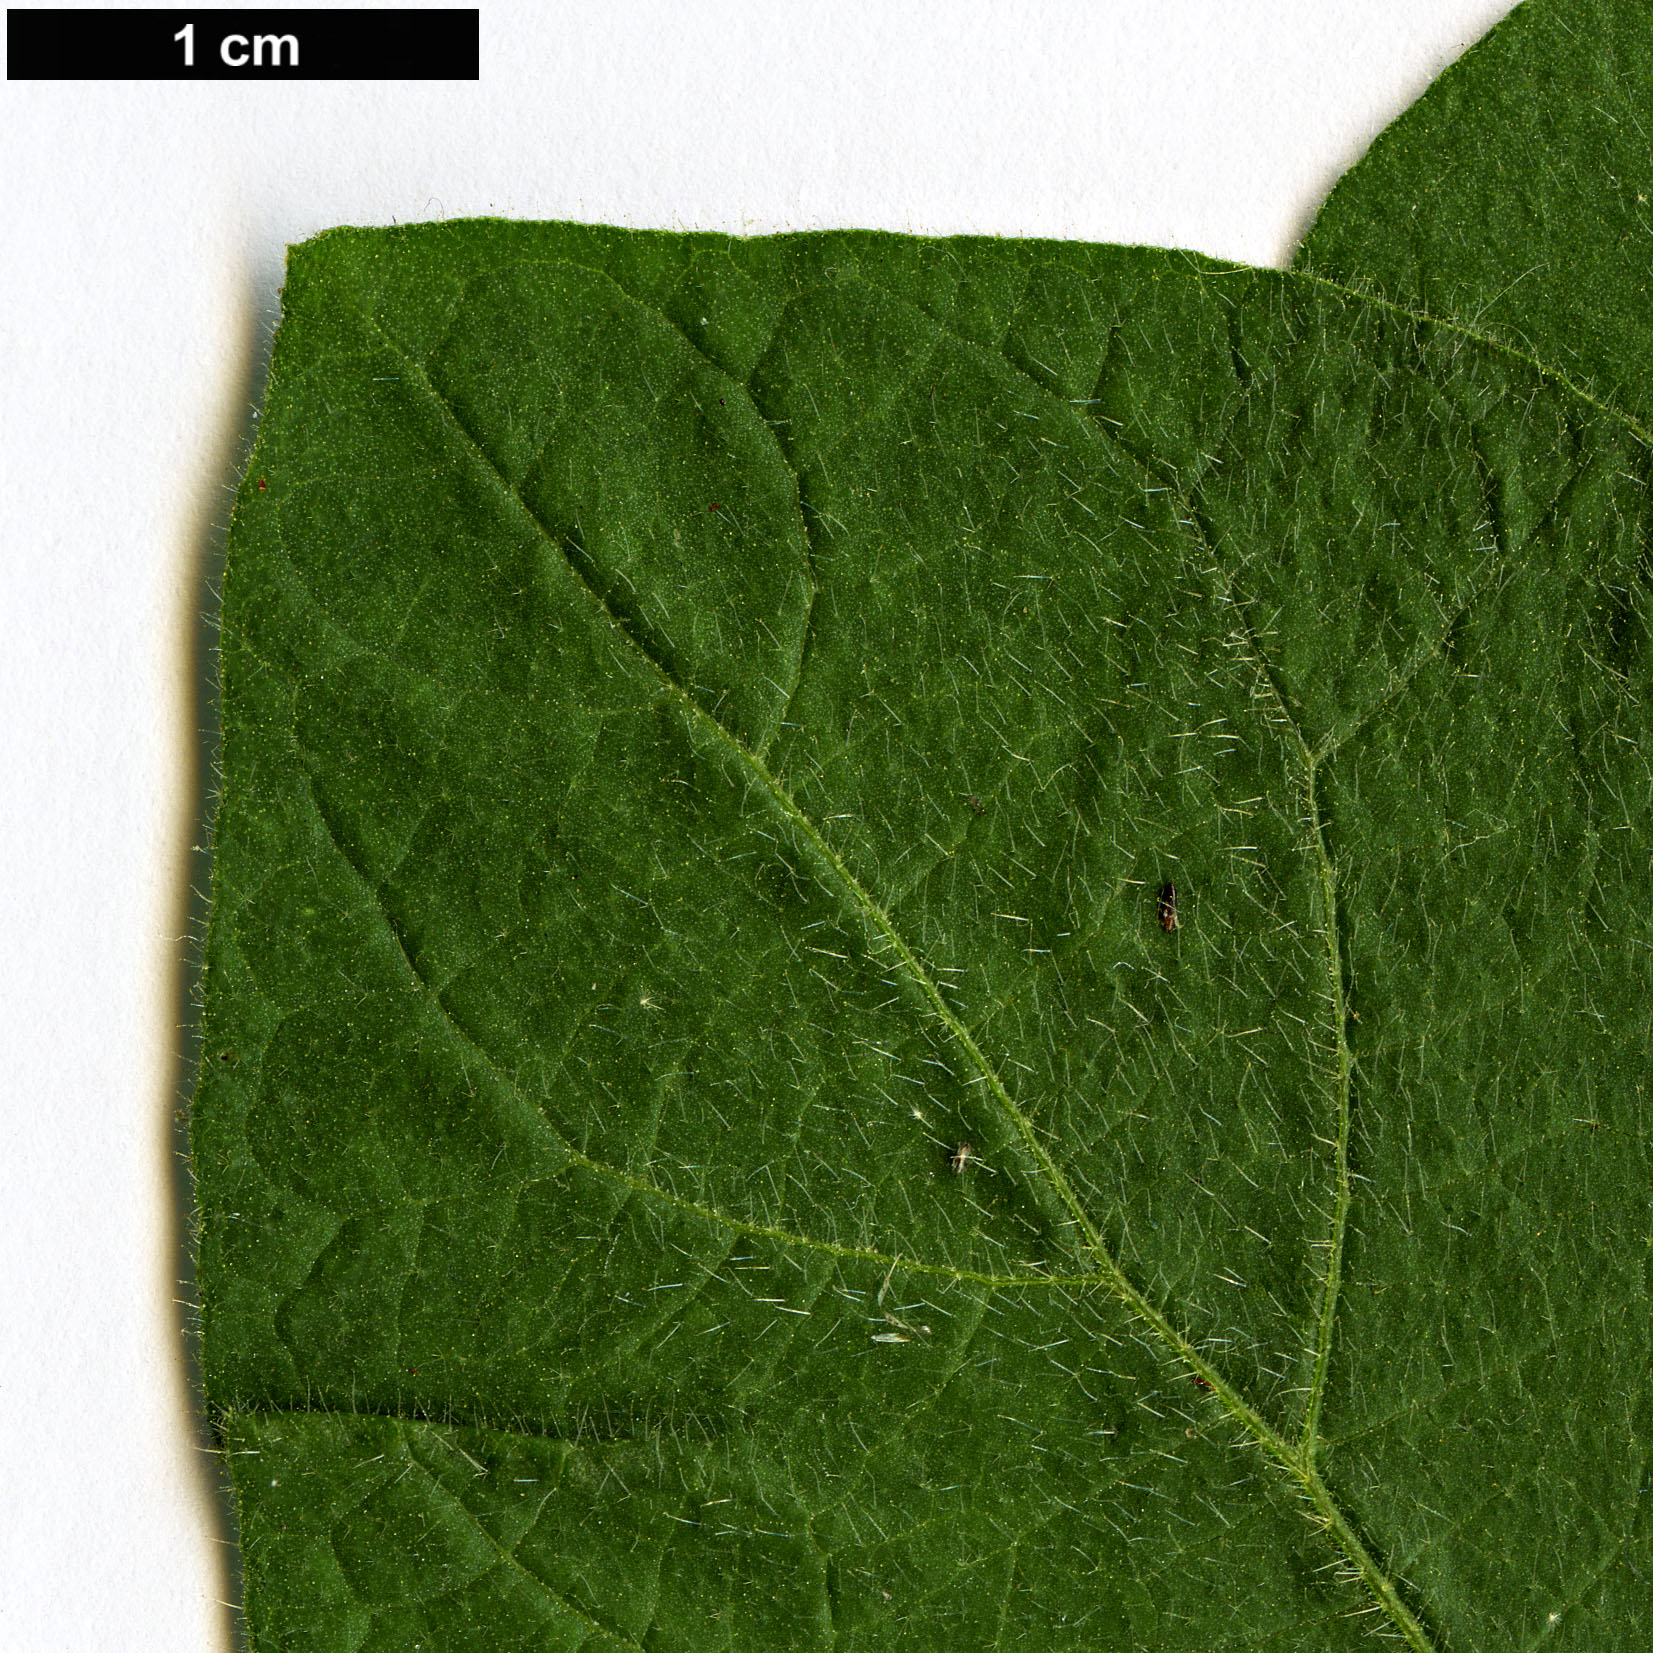 High resolution image: Family: Solanaceae - Genus: Solanum - Taxon: erianthum